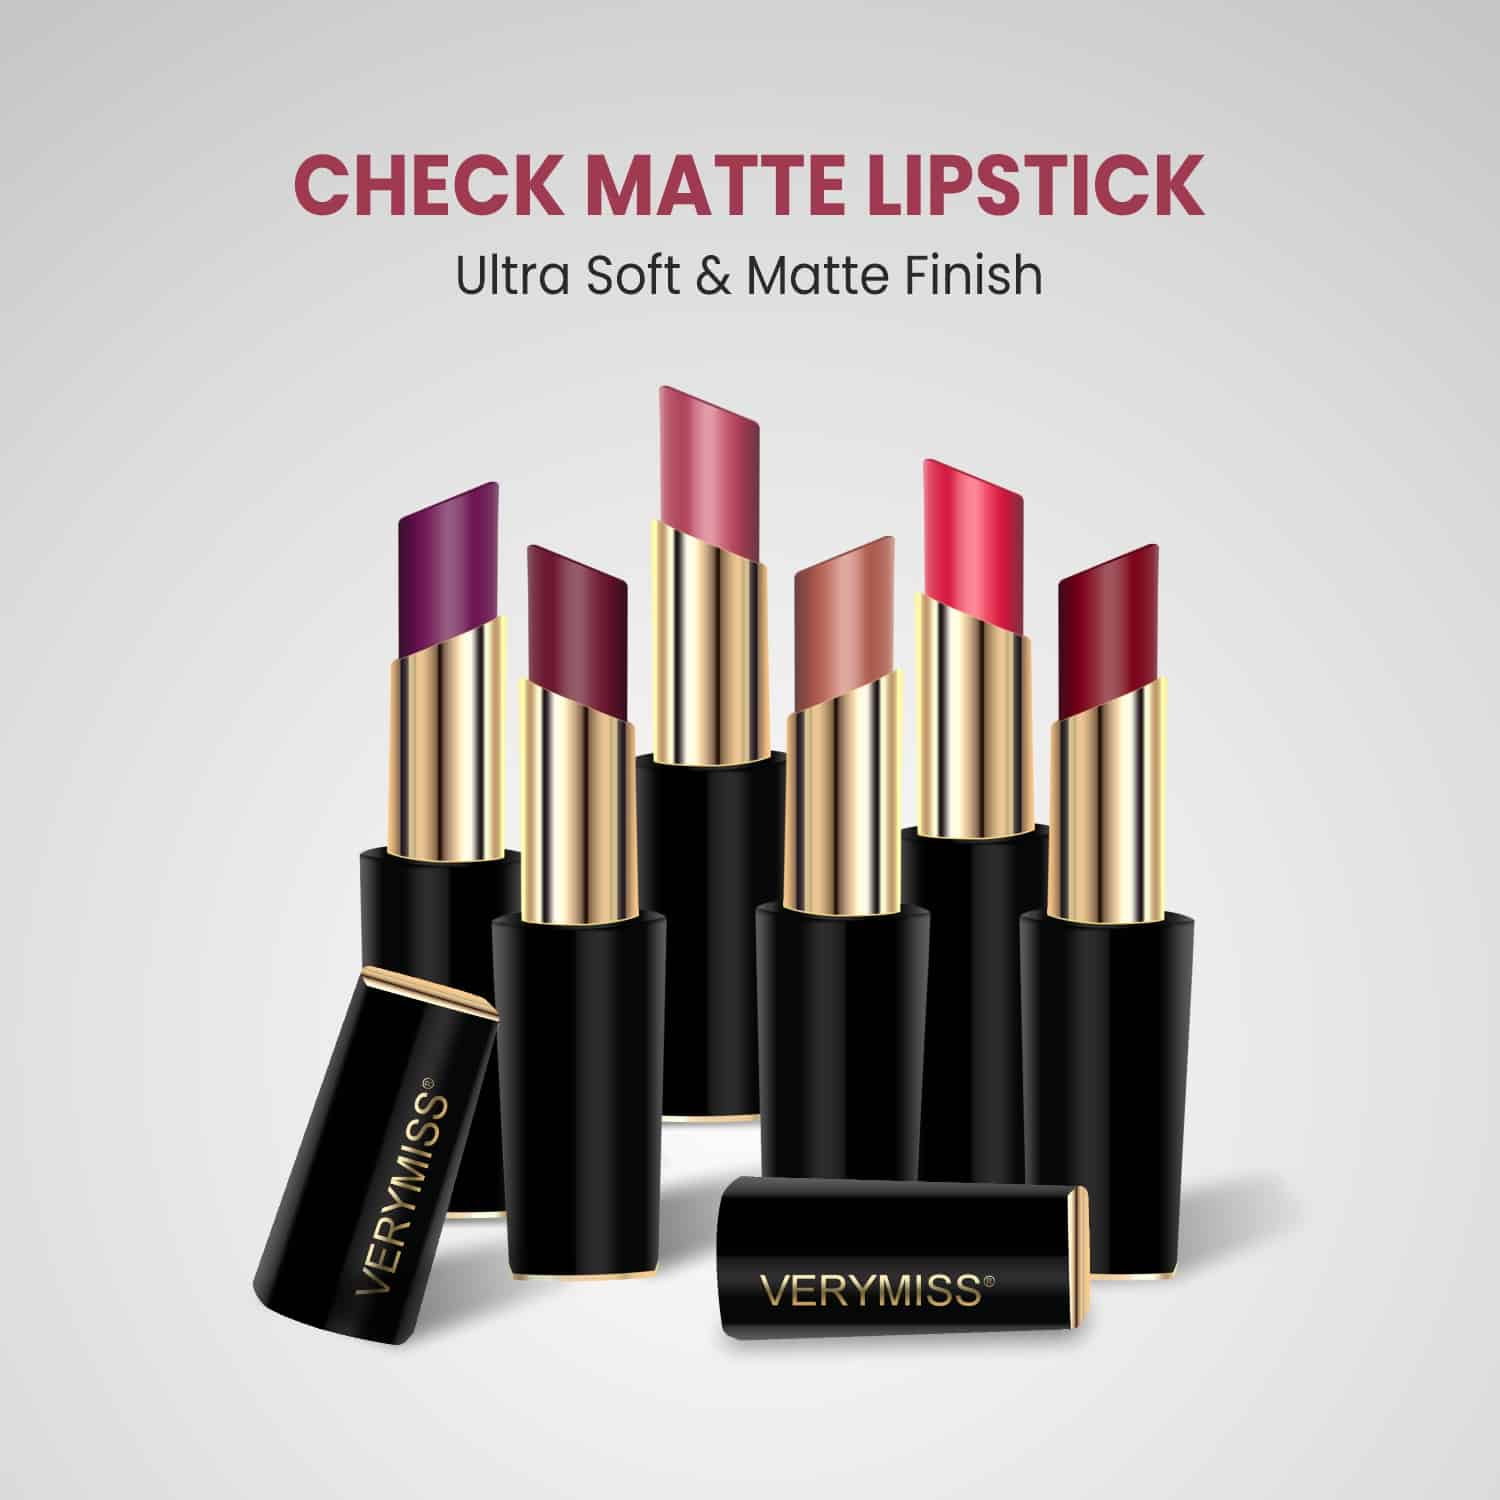 Check Matte Lipstick - 05 Red Wine